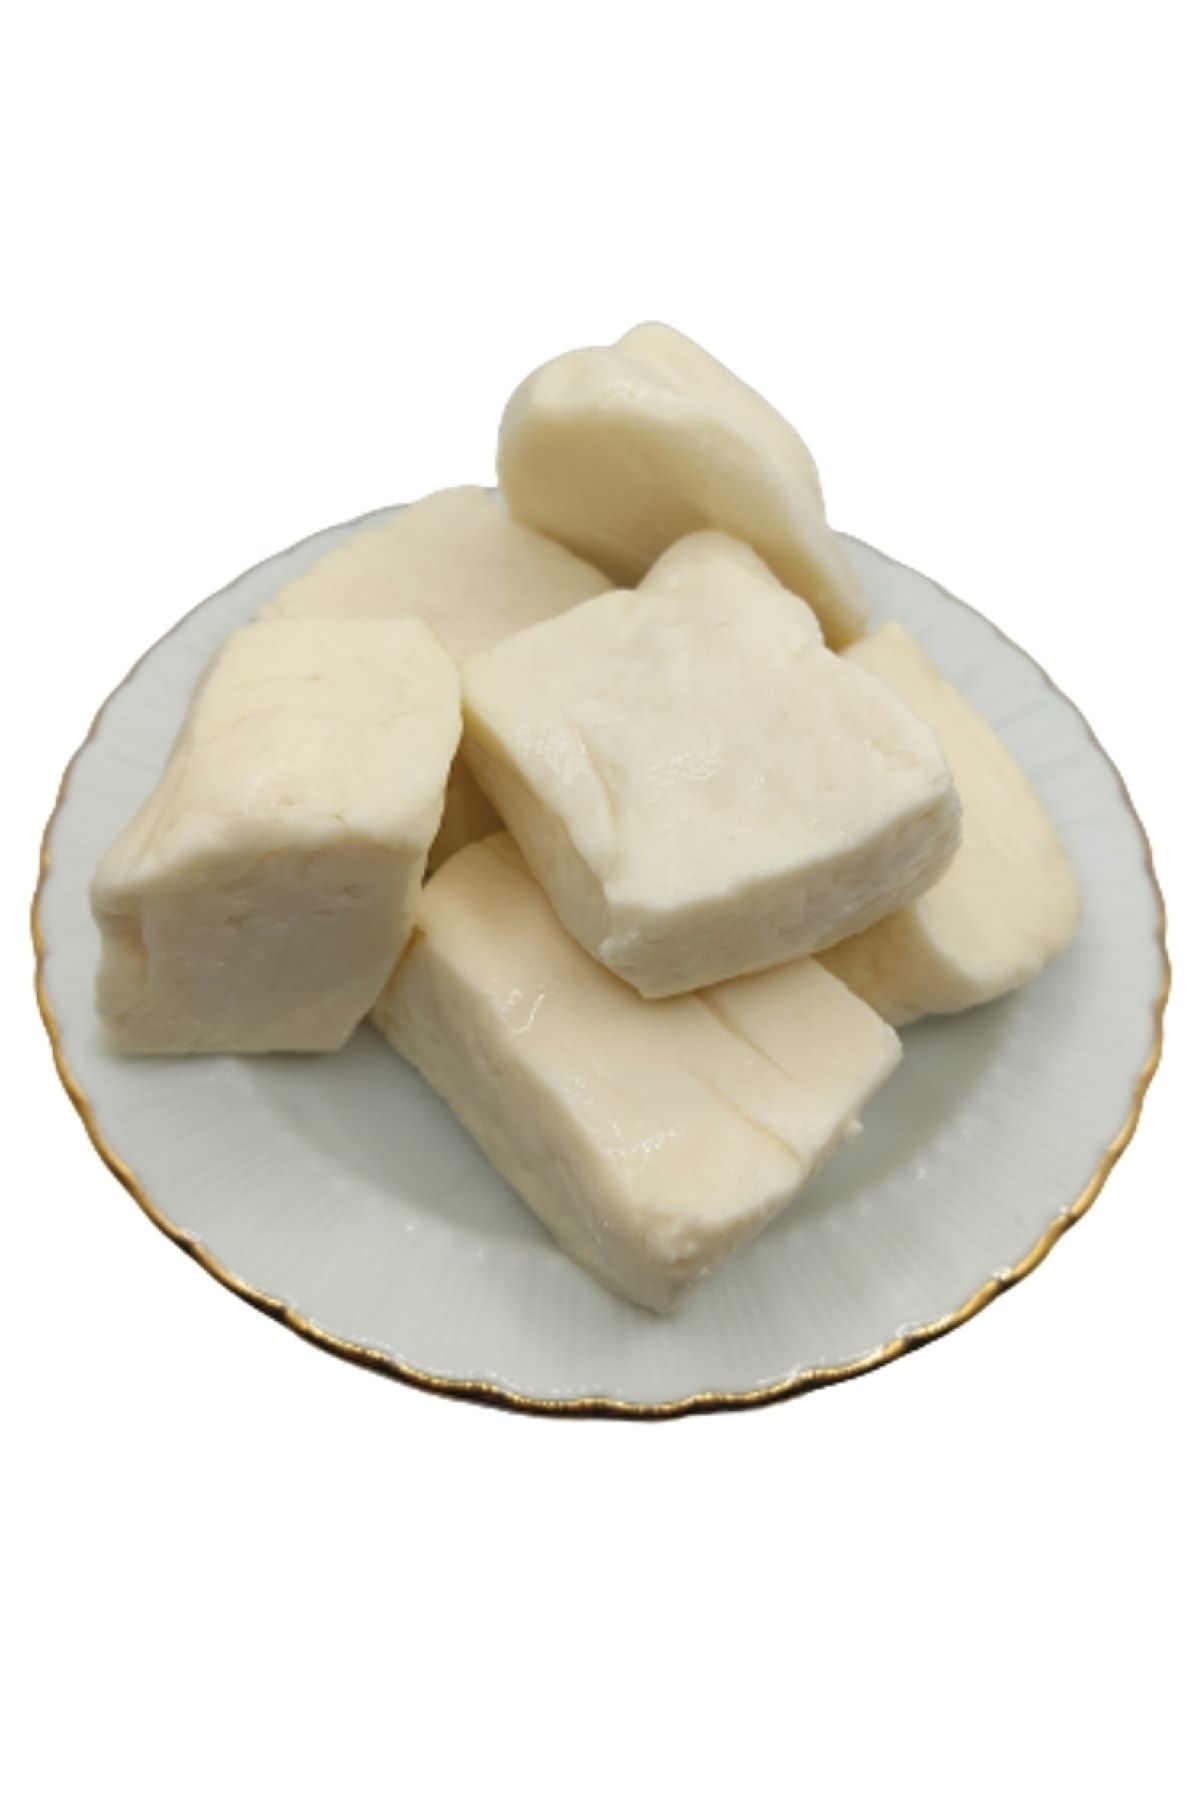 bakkal hasan Tam Yağlı Antep Peyniri (koyun Peyniri) 2 Kg -